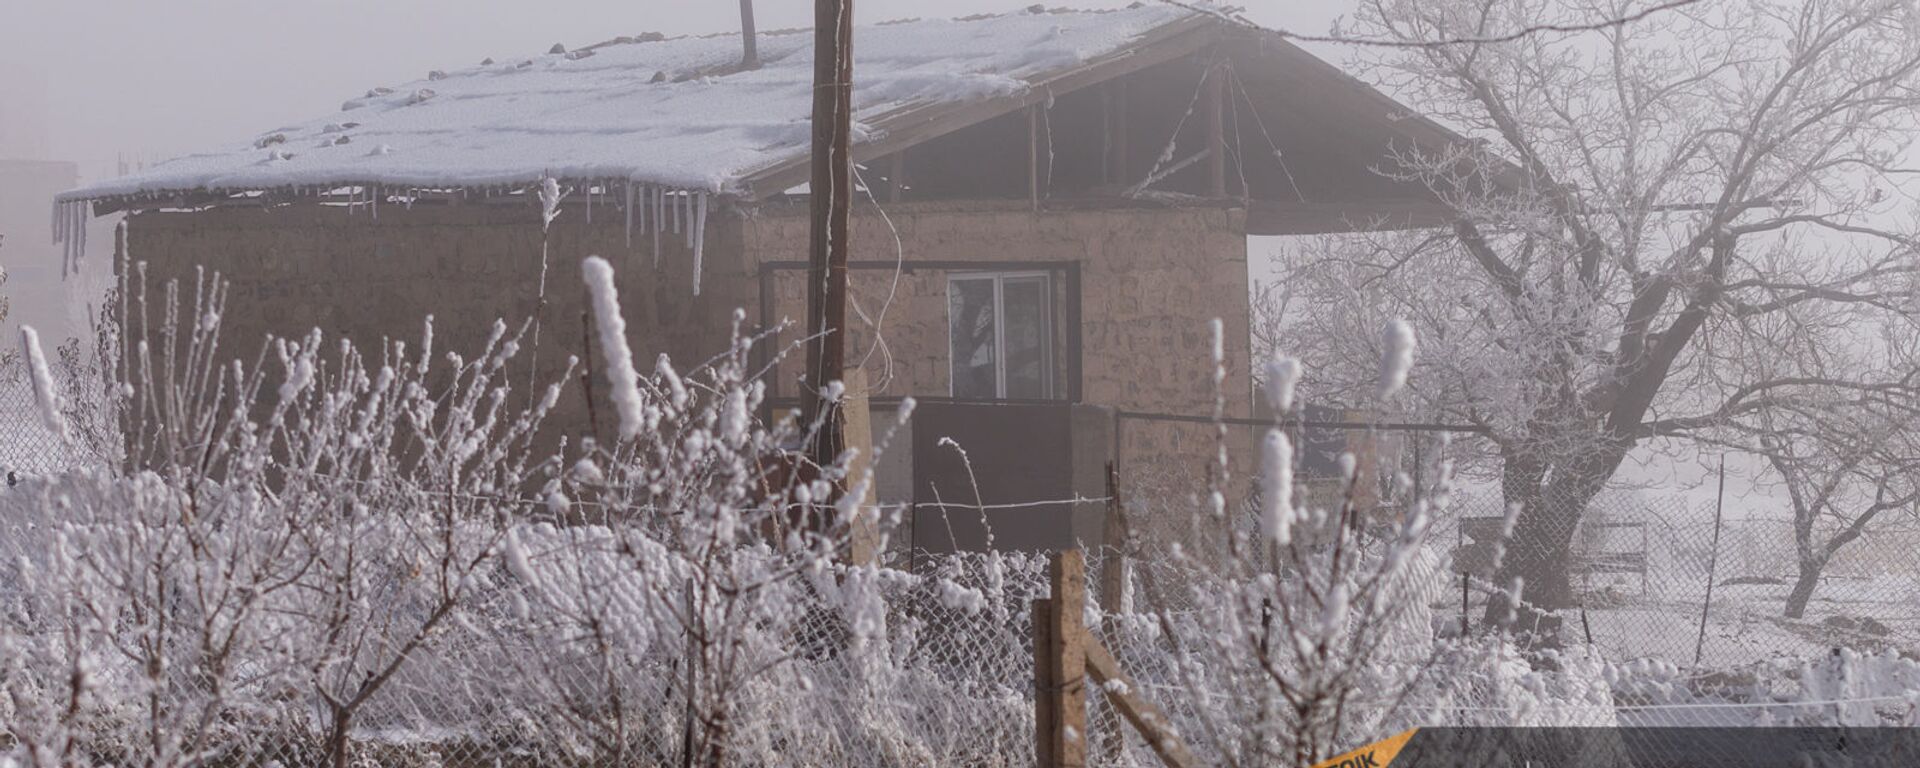 Село Тигранашен (11 января 2021). Араратская область - Sputnik Армения, 1920, 12.01.2021